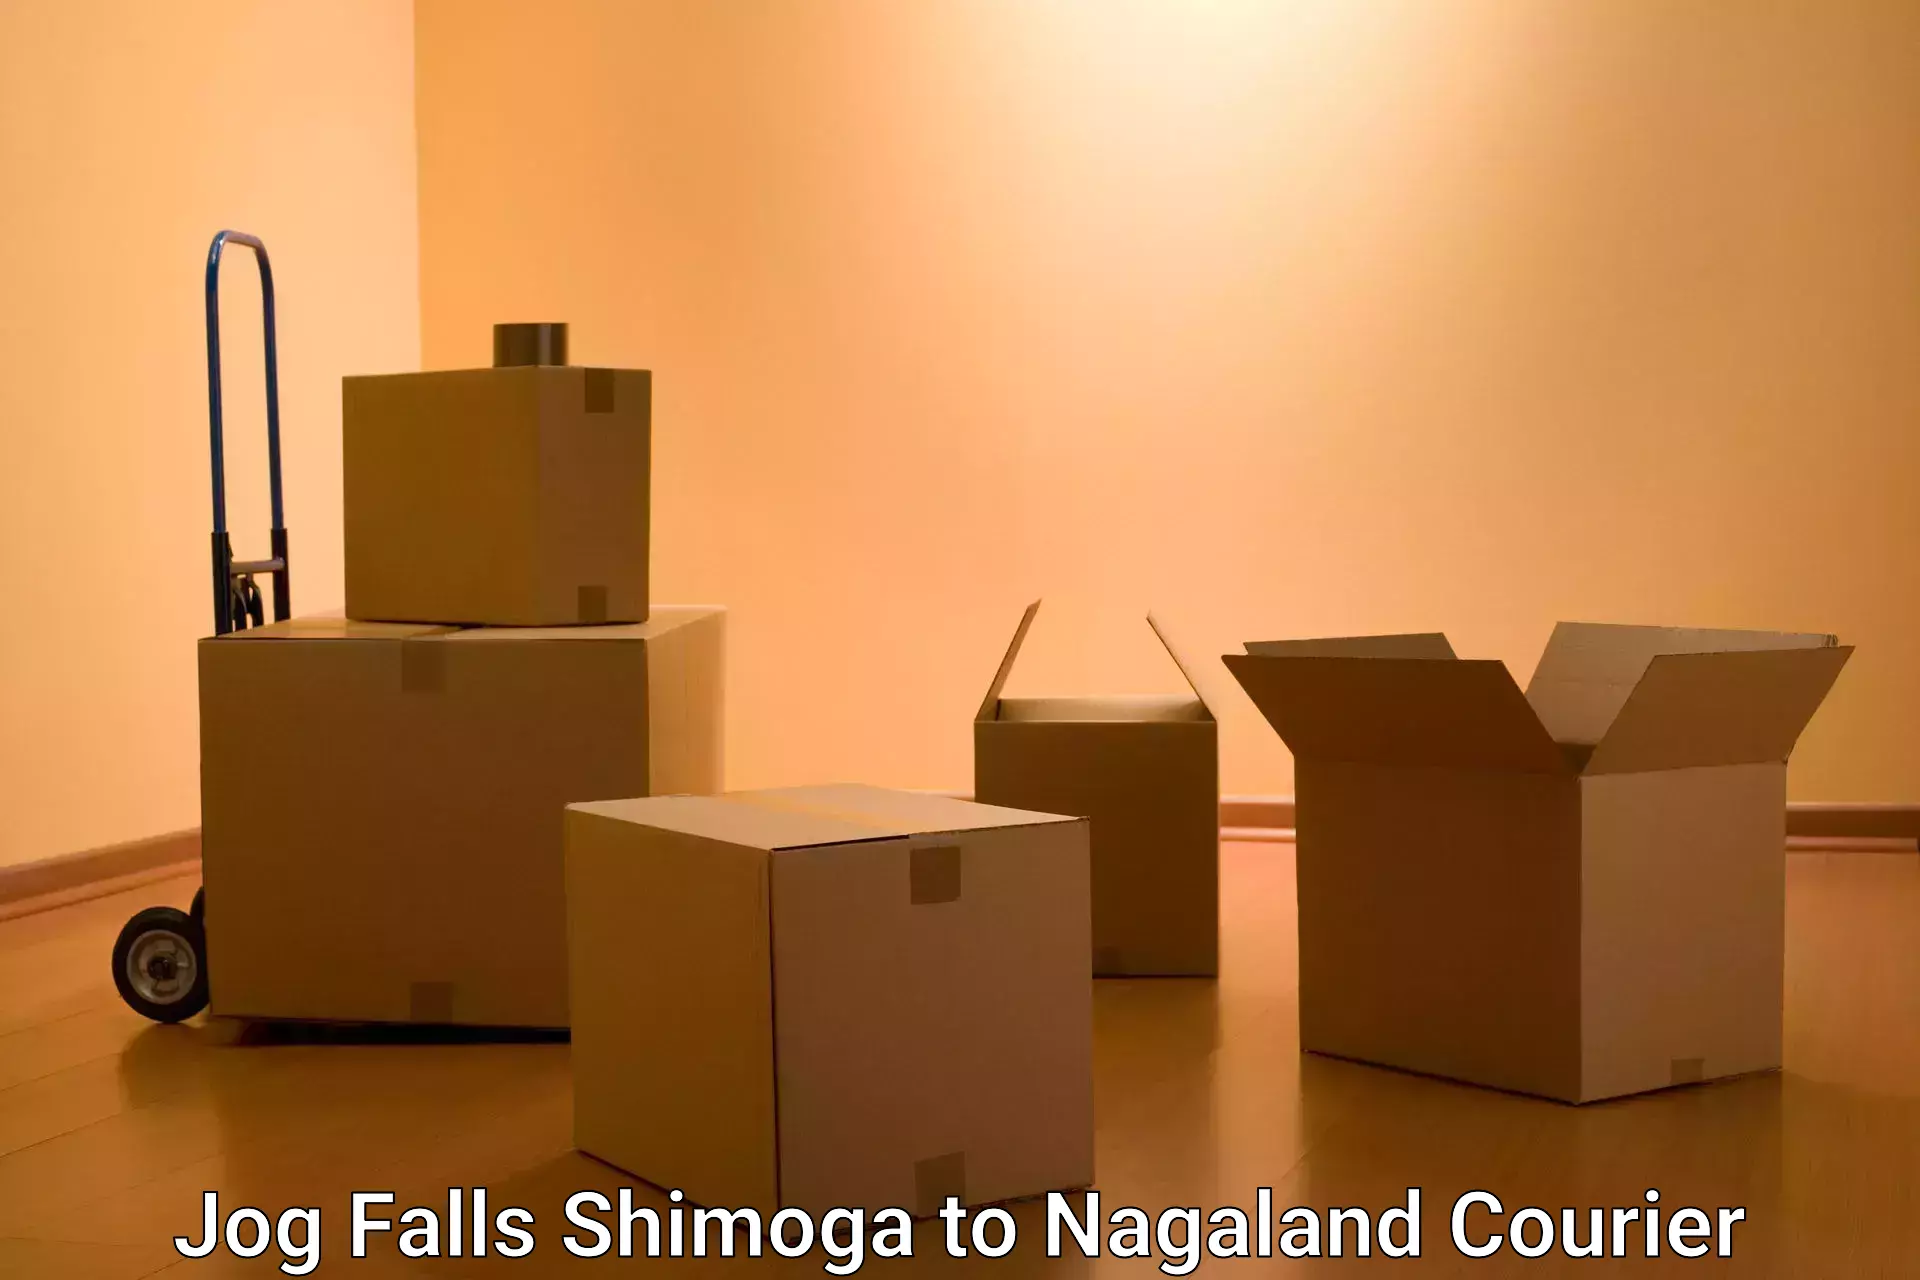 Cash on delivery service Jog Falls Shimoga to NIT Nagaland